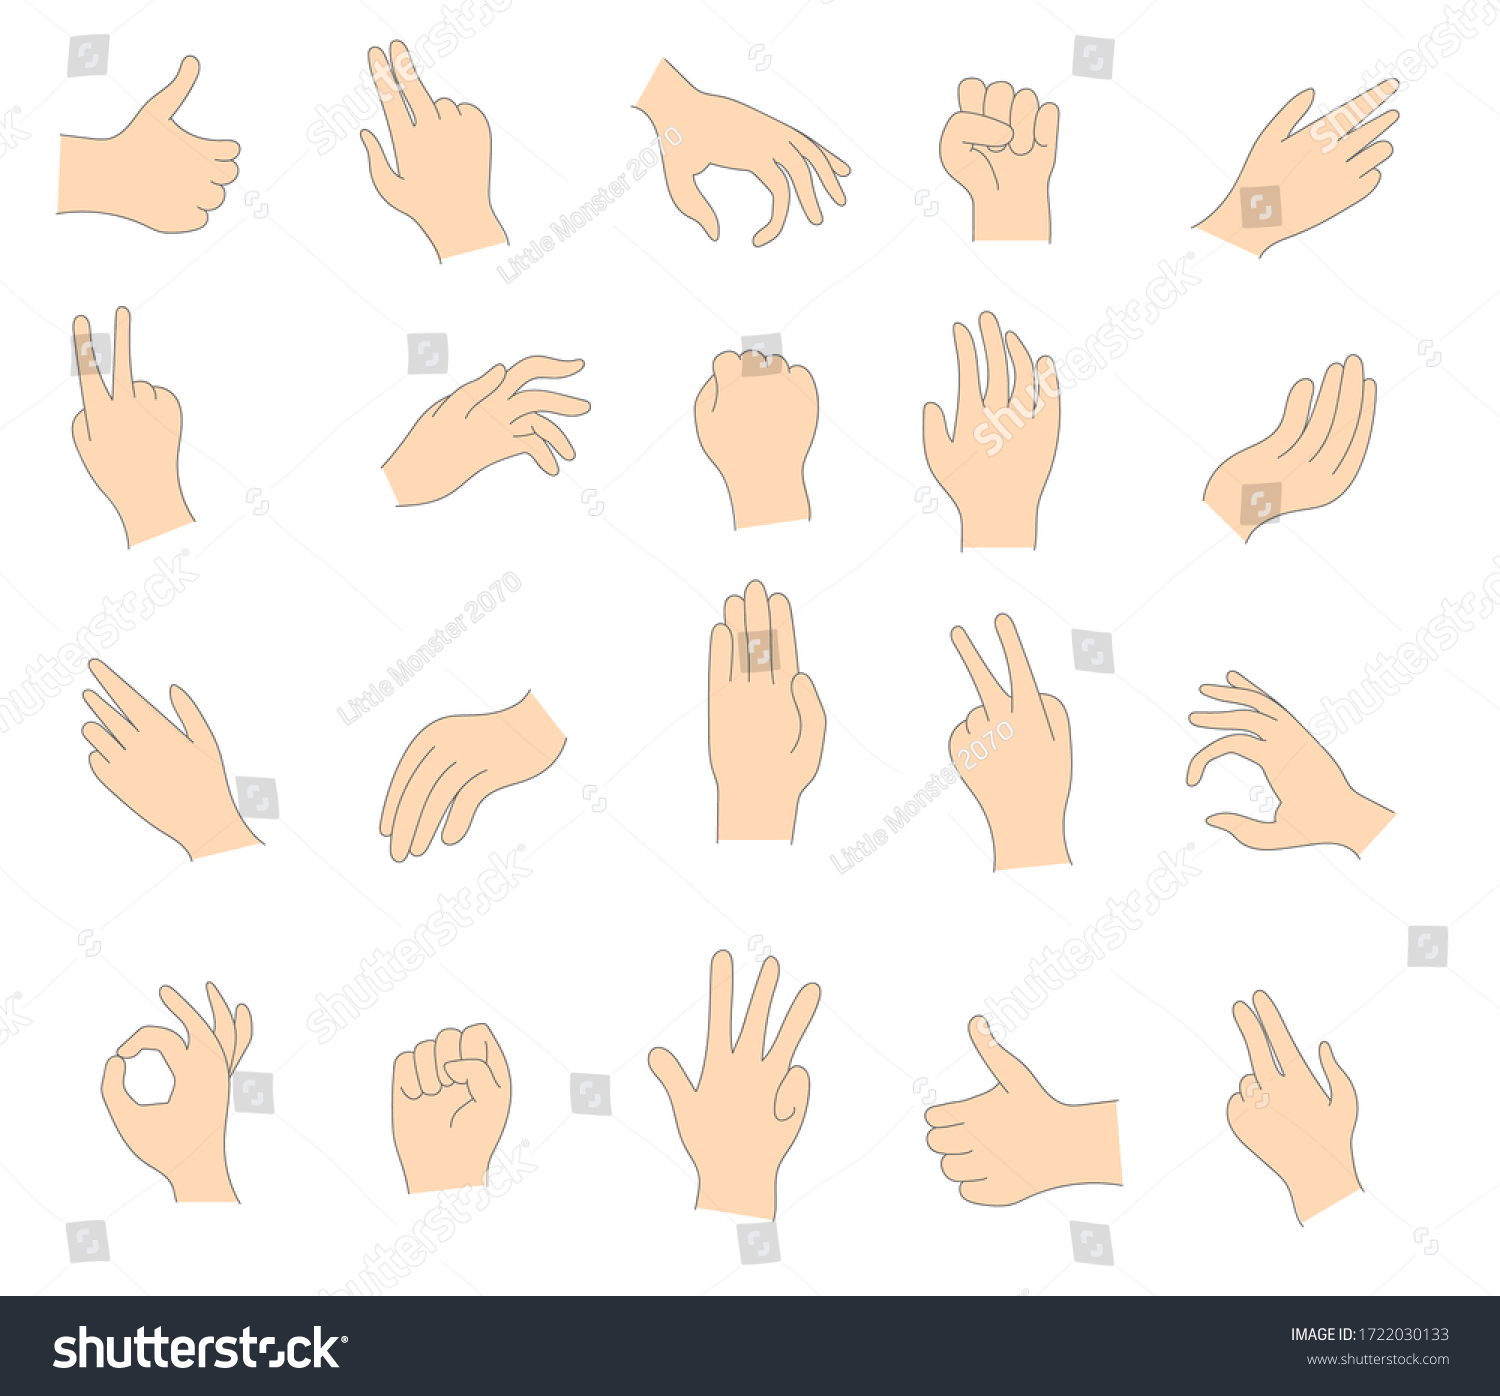 白い背景に人の手のさまざまなジェスチャー 女性と男性の手のイラスト 手のひらの組み合わせで 様々な仕草を表す 手のひらが何かを指差している のイラスト素材